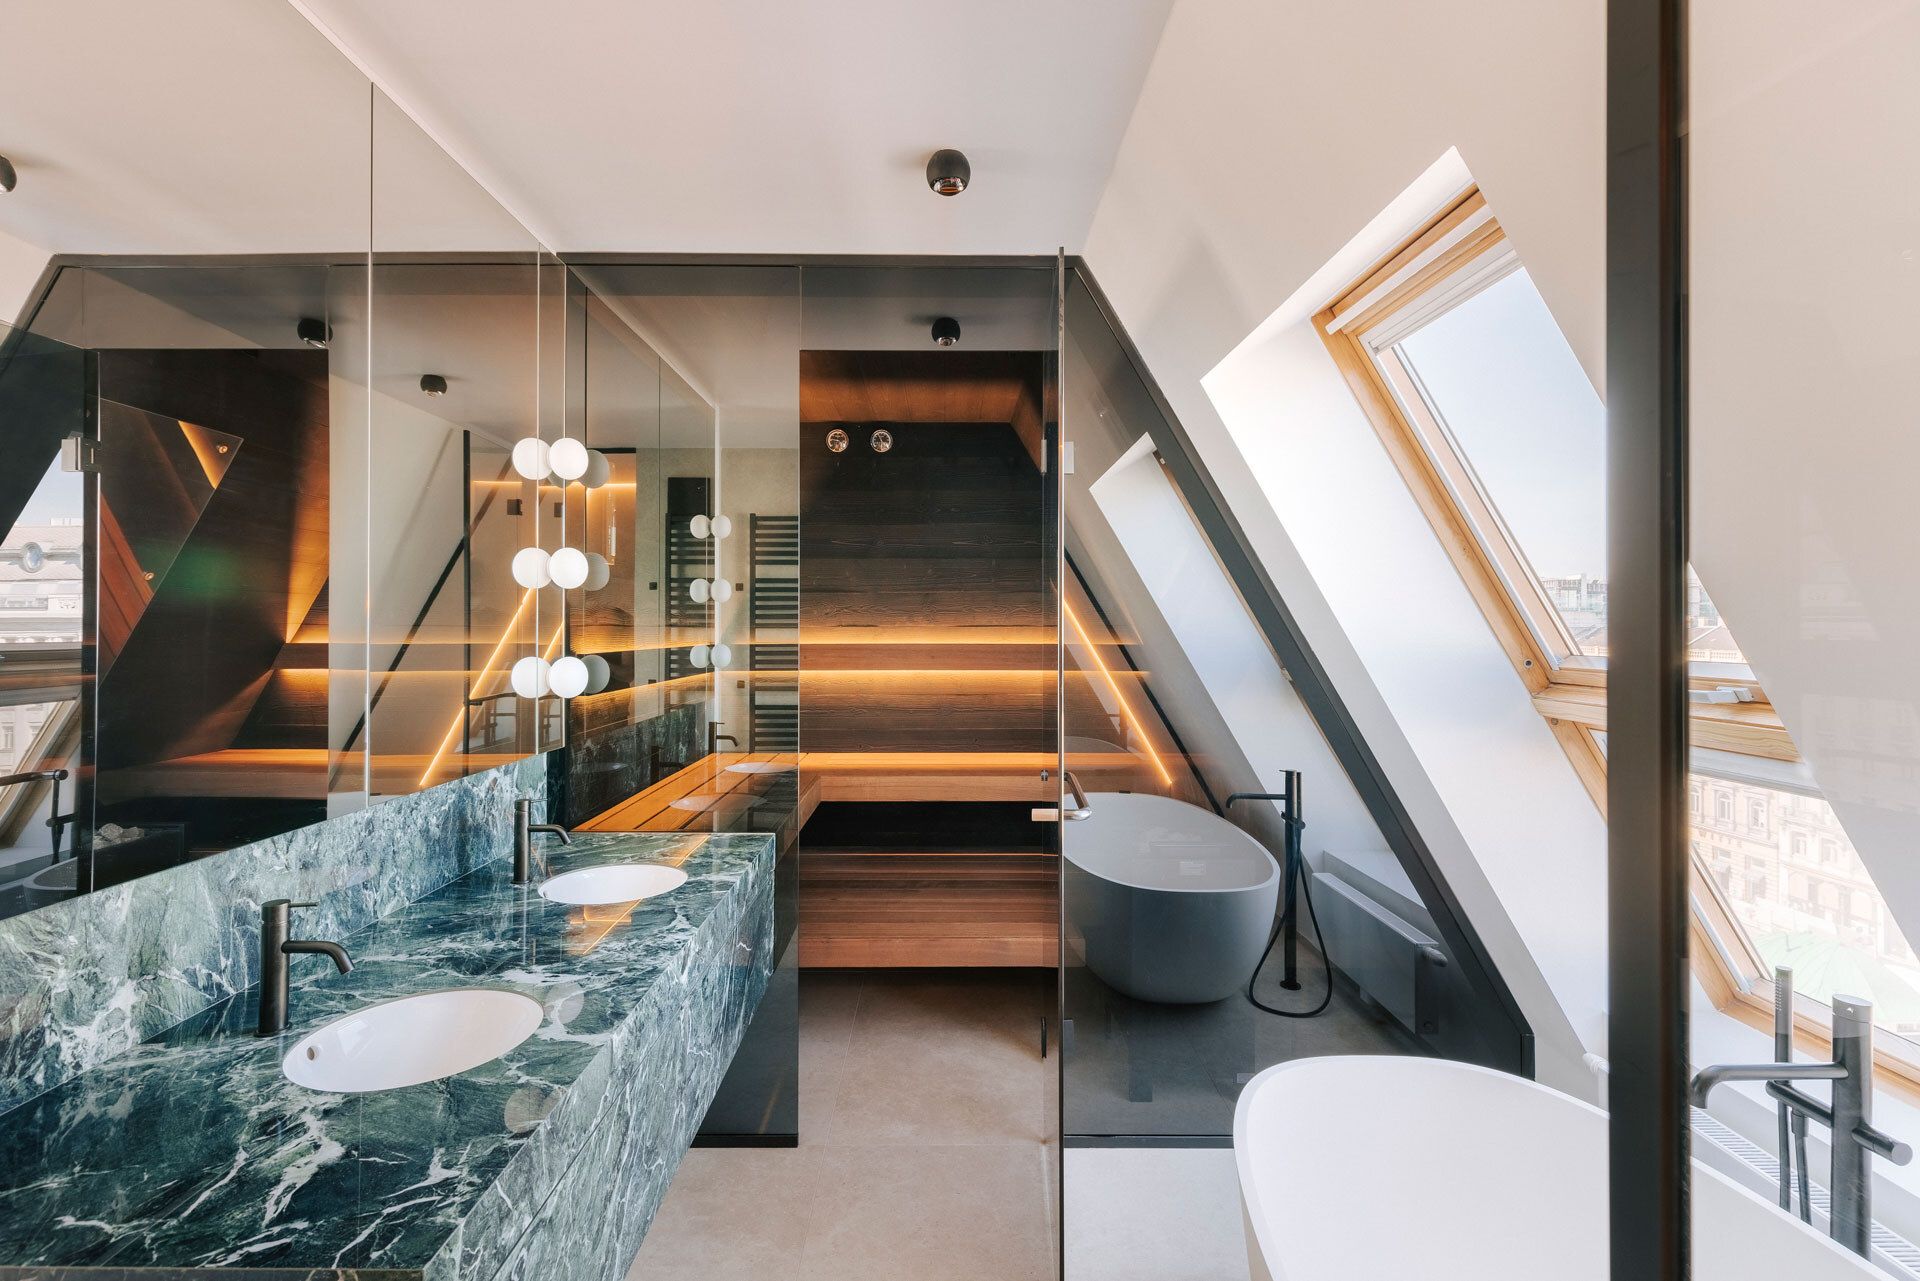 Dunkel verglaste und dezent beleuchtete Sauna mit Marmorwaschtisch und freistehender Badewanne in einem luxuriösen Badezimmer einer Dachgeschosswohnung.